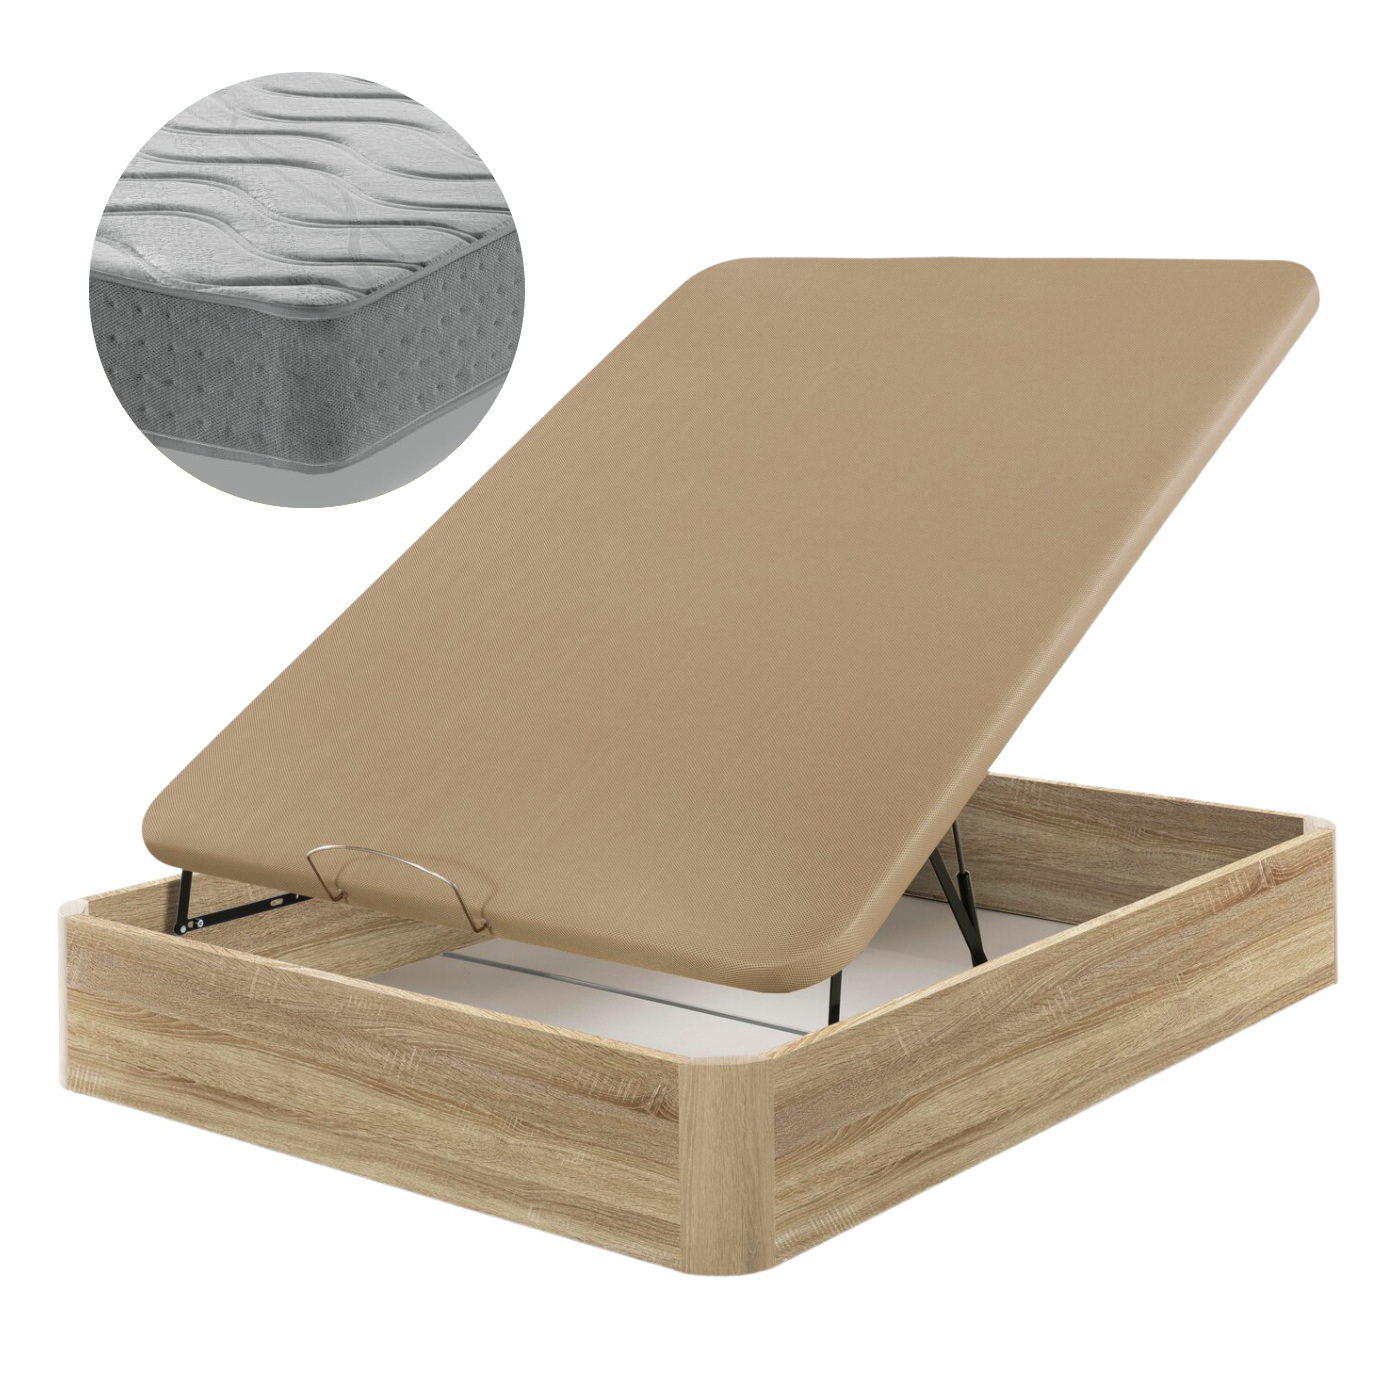 Canapé in legno e pacchetto materasso Generazione Z | QUERCIA